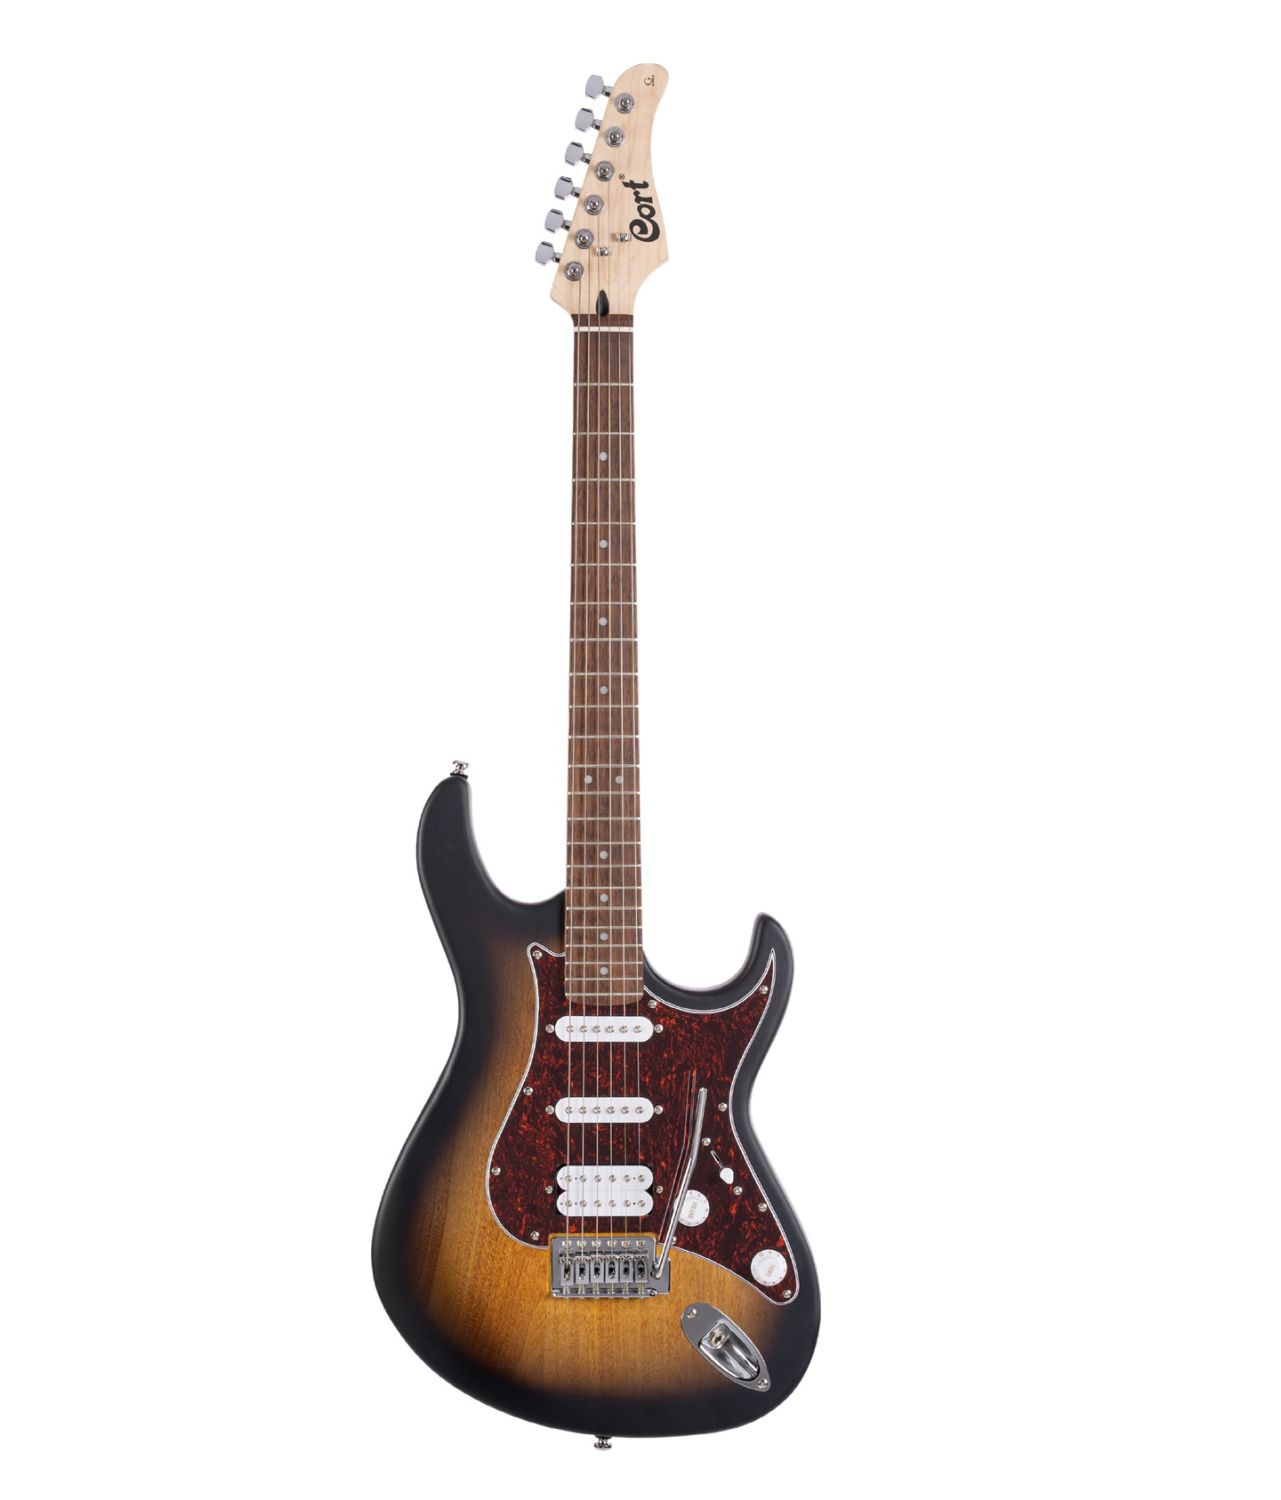 CORT G110 OPSB - gitara elektryczna